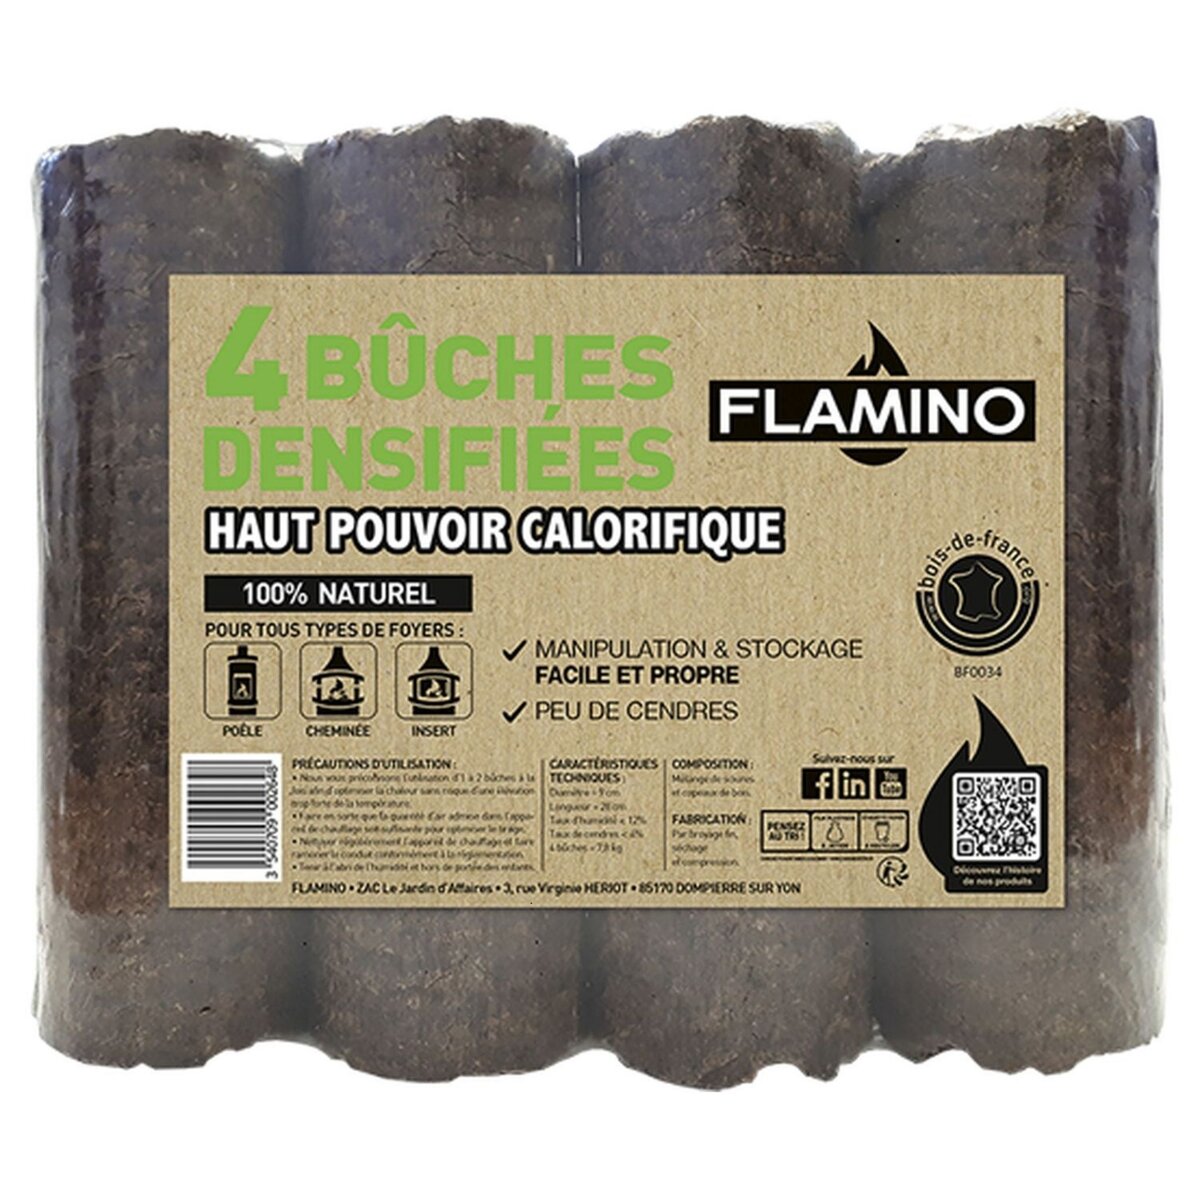 FLAMINO Buches bois densifié x4